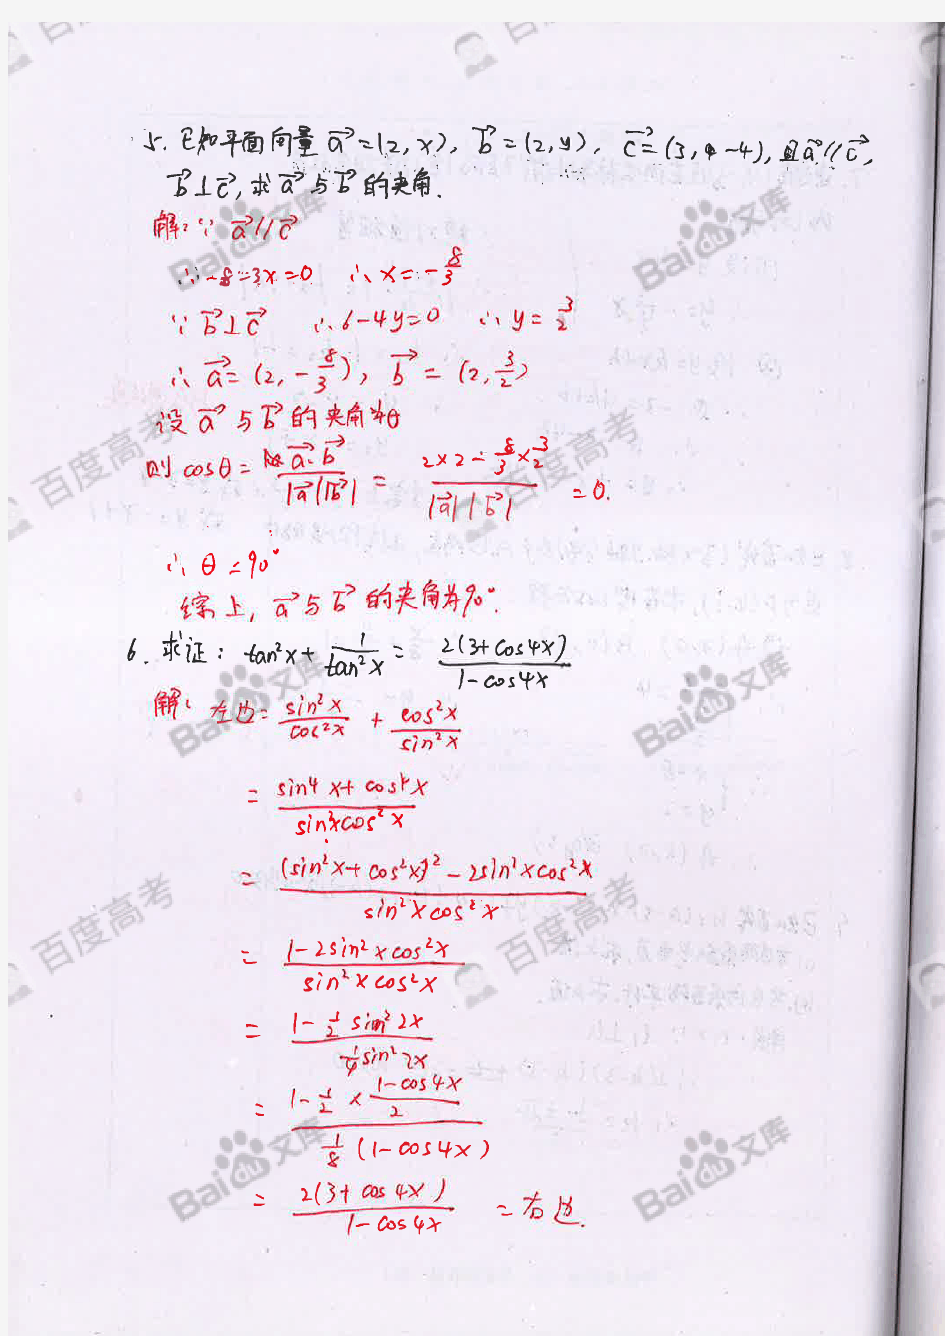 3高中数学错题笔记_Part3_河北衡水中学文科学霸_2016高考状元笔记